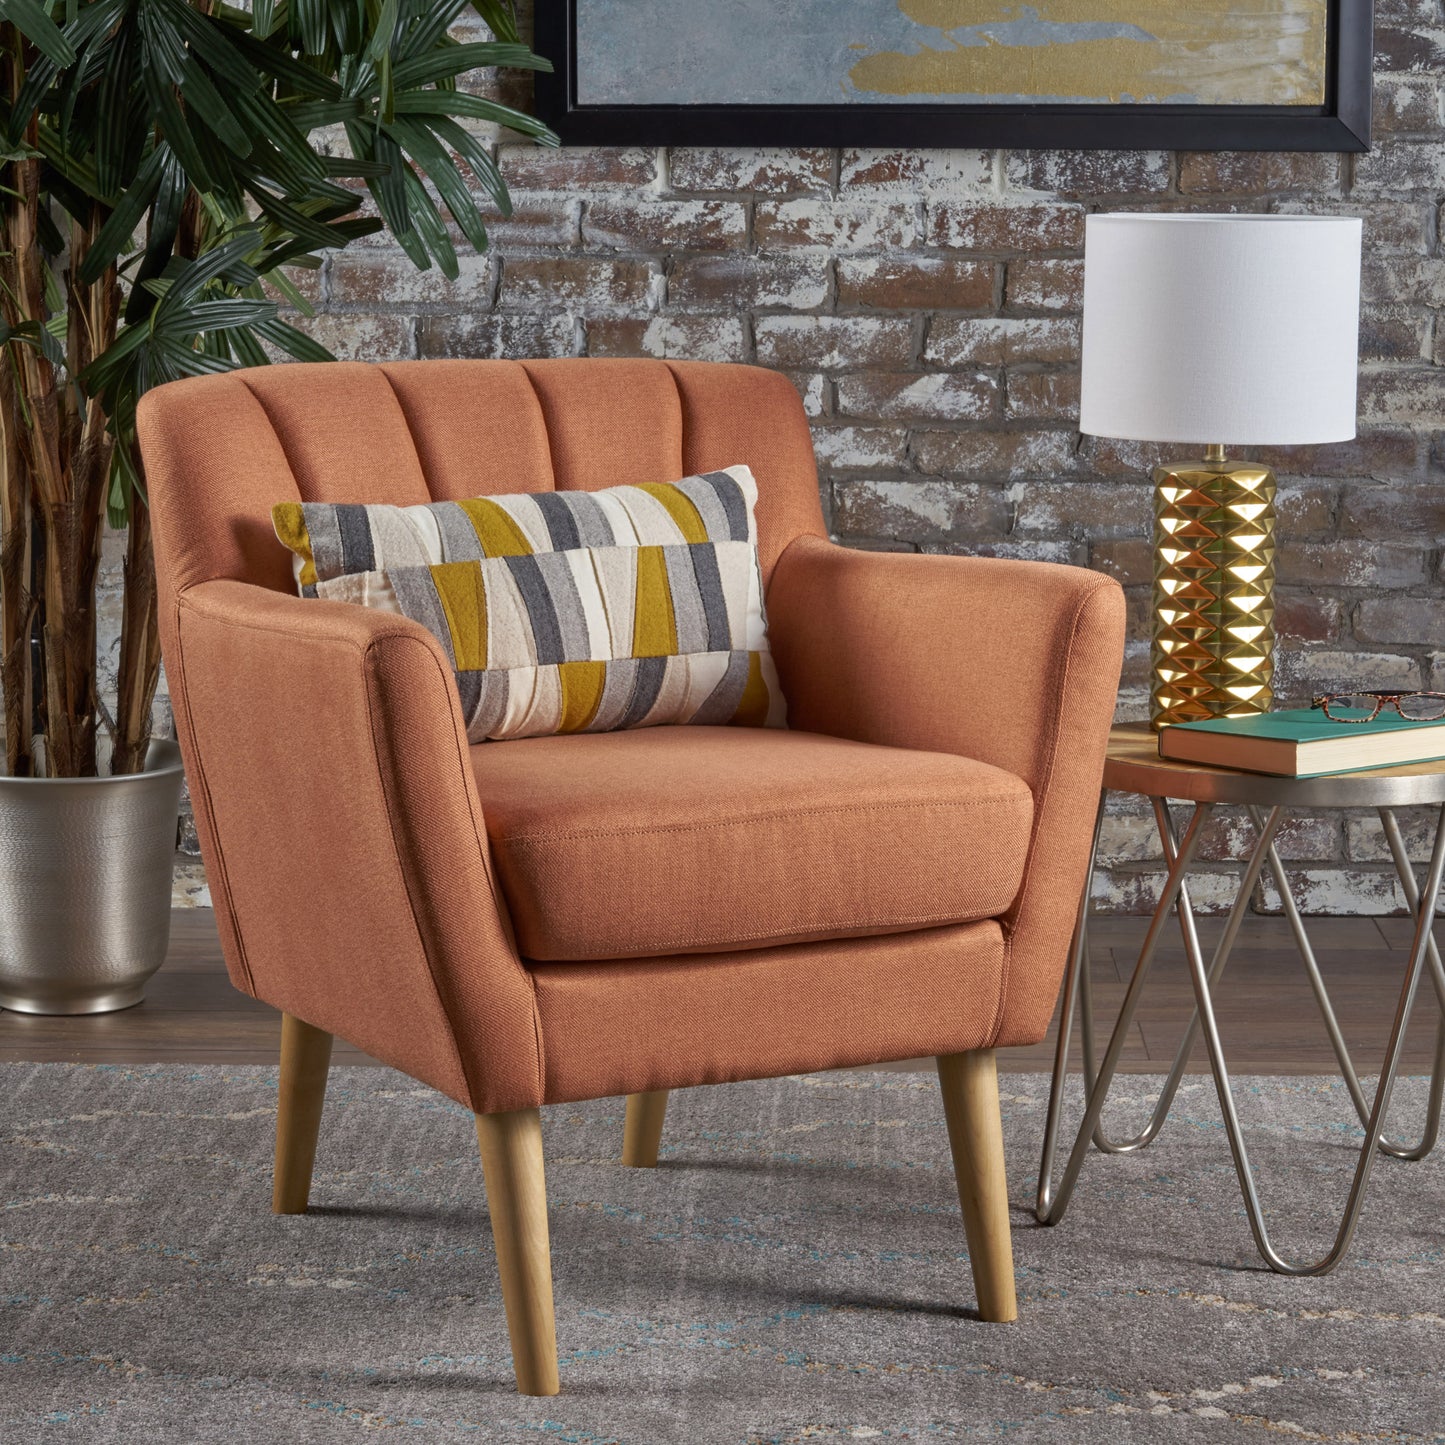 Madelyn Mid Century Modern Fabric Club Chair